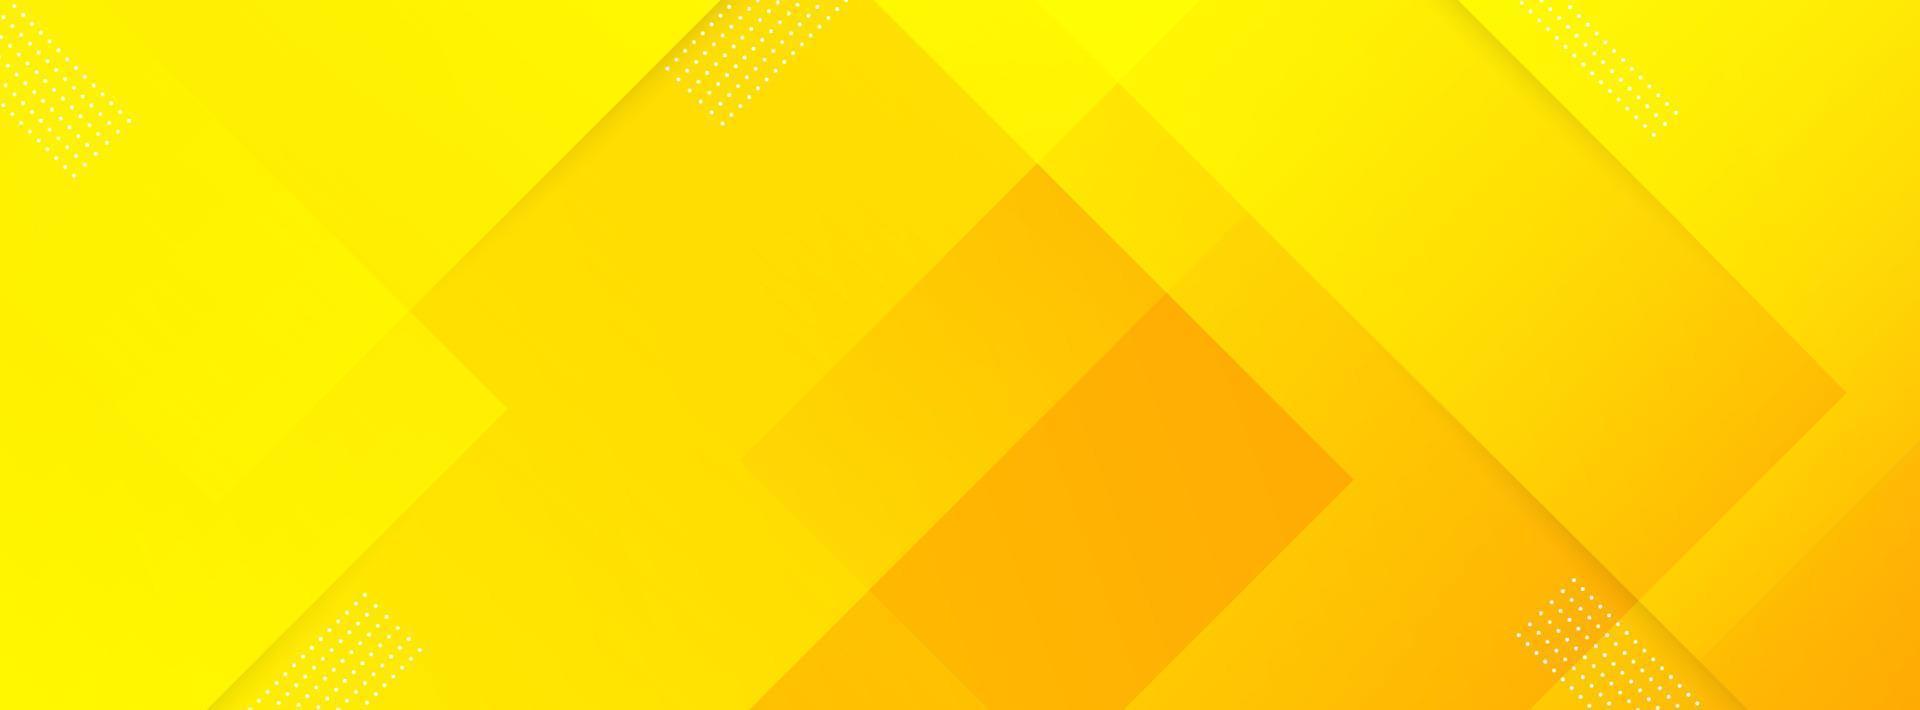 moderno bandeira fundo. colorida, amarelo e laranja gradação, padrão, transparente, eps 10 vetor